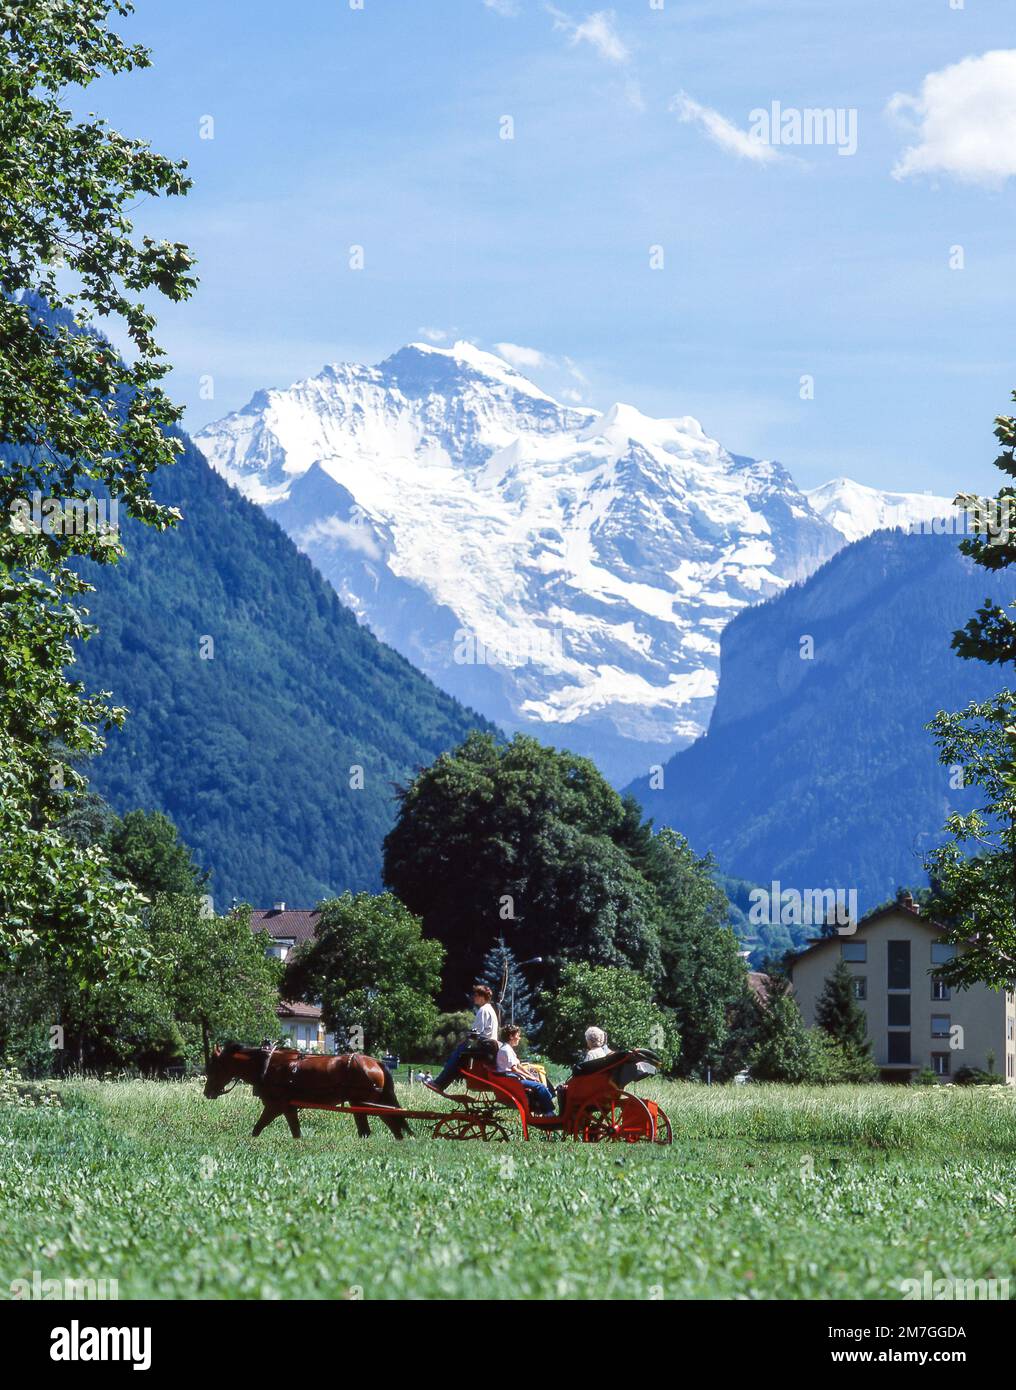 Cavalcata in carrozza con il monte Yungfrau alle spalle, Interlaken, Berna, Svizzera Foto Stock